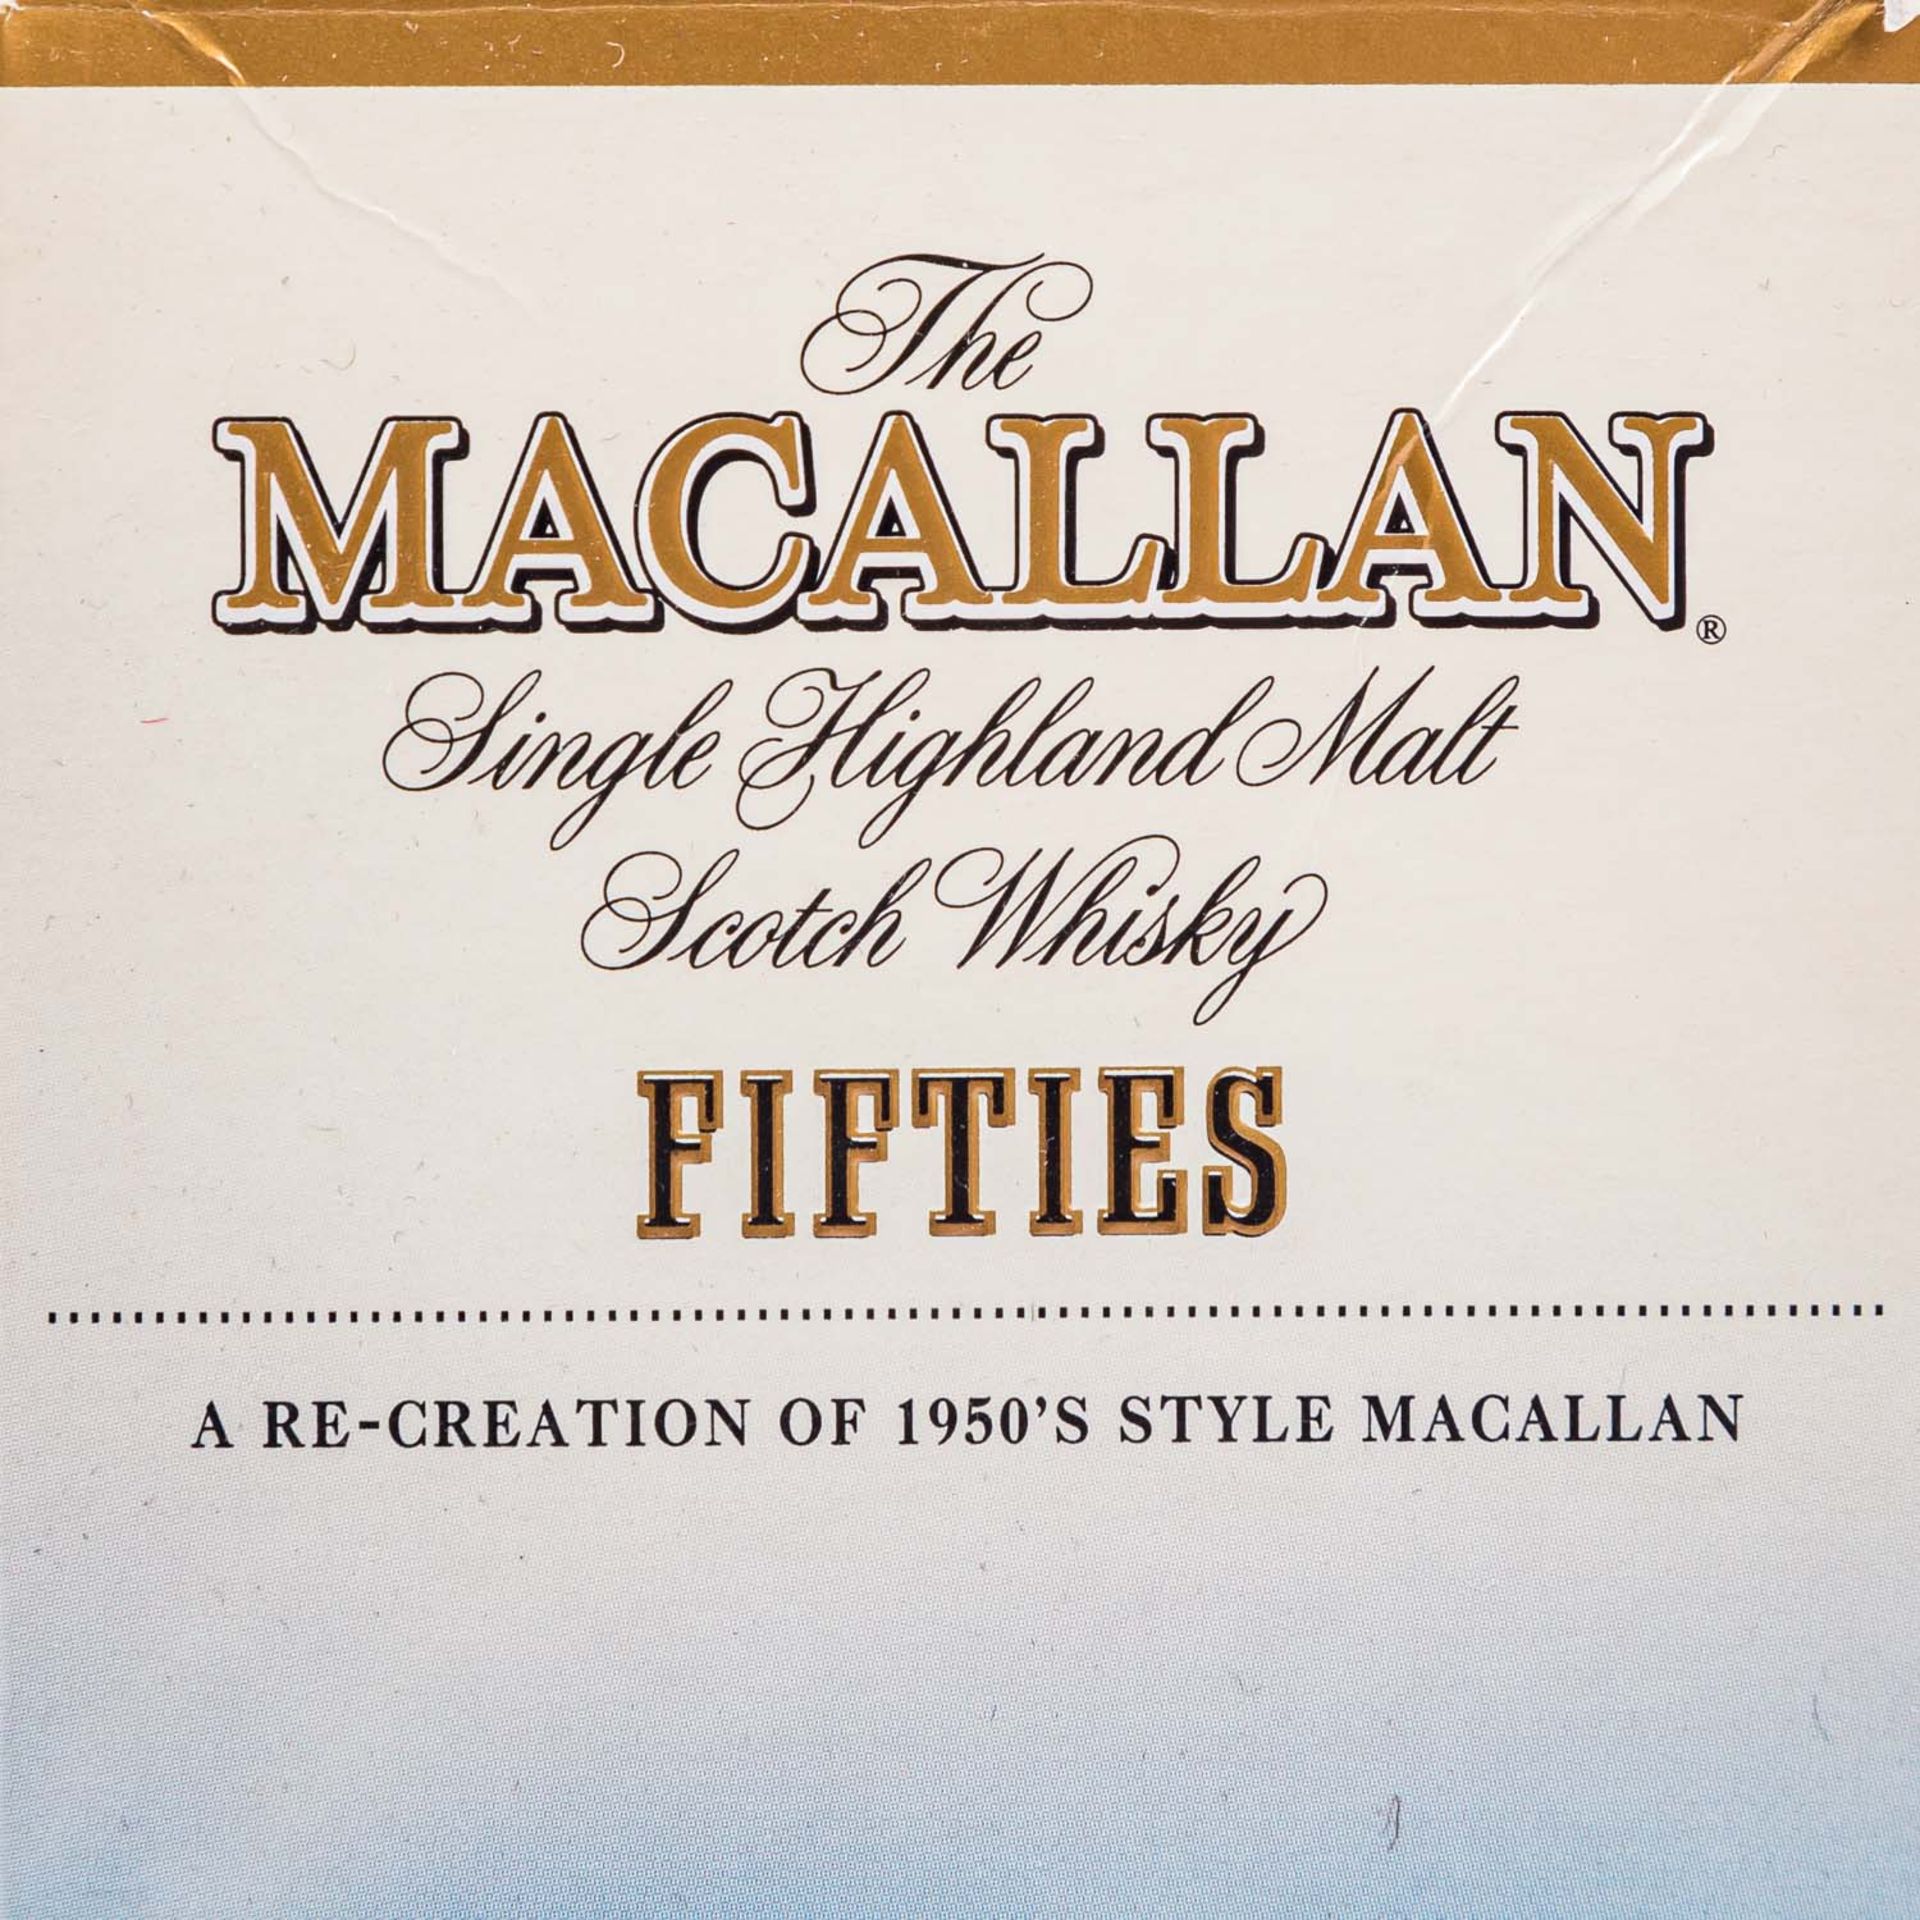 MACALLAN Single Highland Malt Scotch Whisky "Fifties" - Bild 2 aus 9